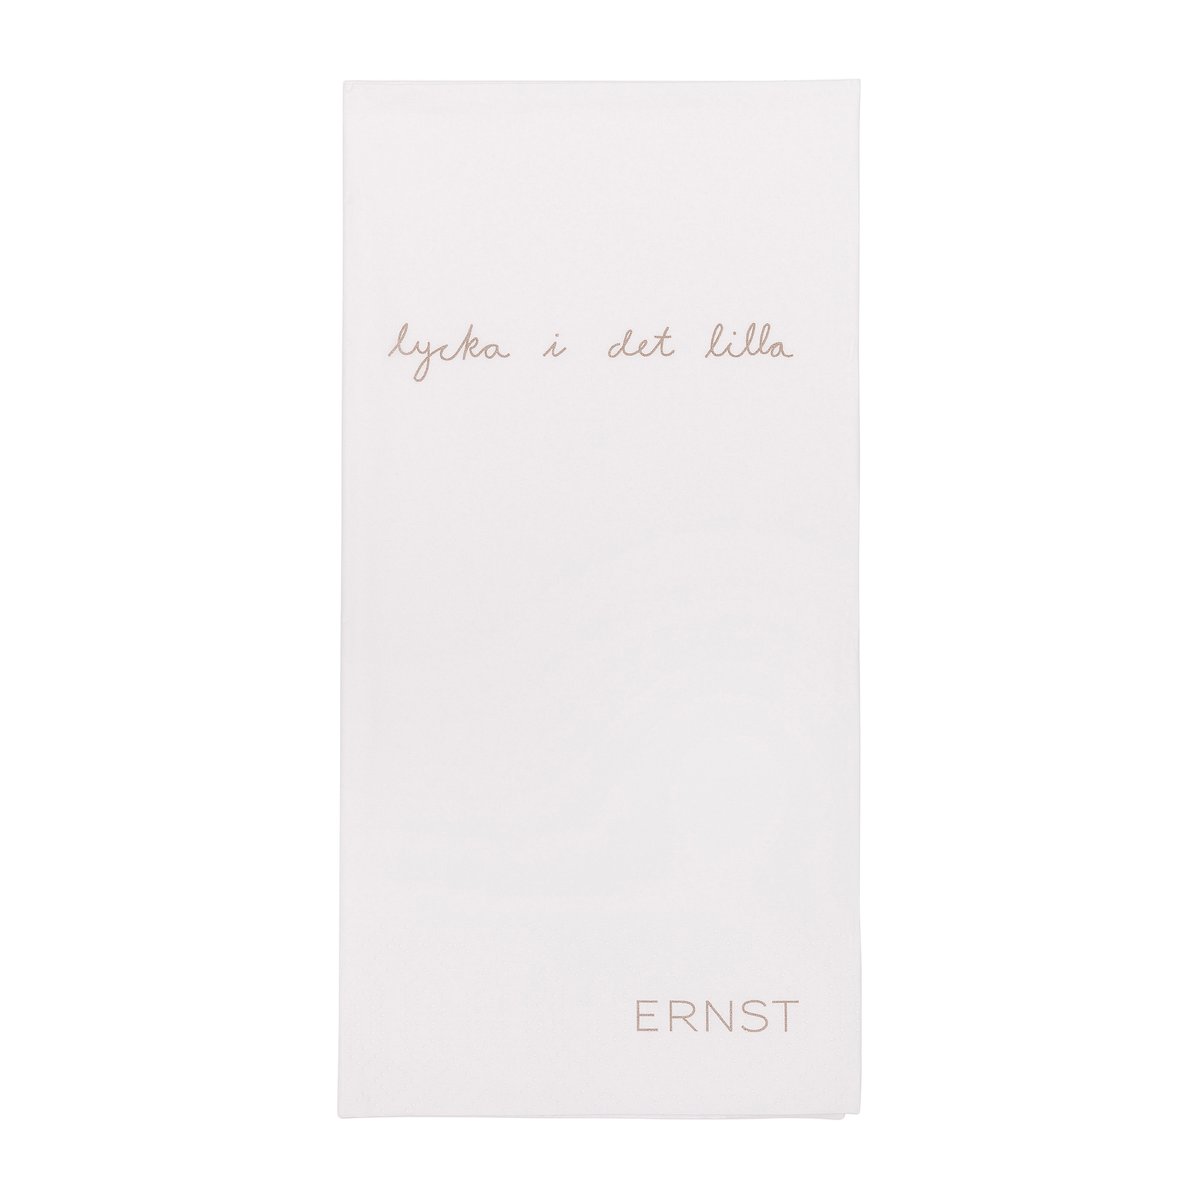 ERNST Ernst lautasliina tekstillä Lycka i det lilla 20-pakkaus Valkoinen-harmaa